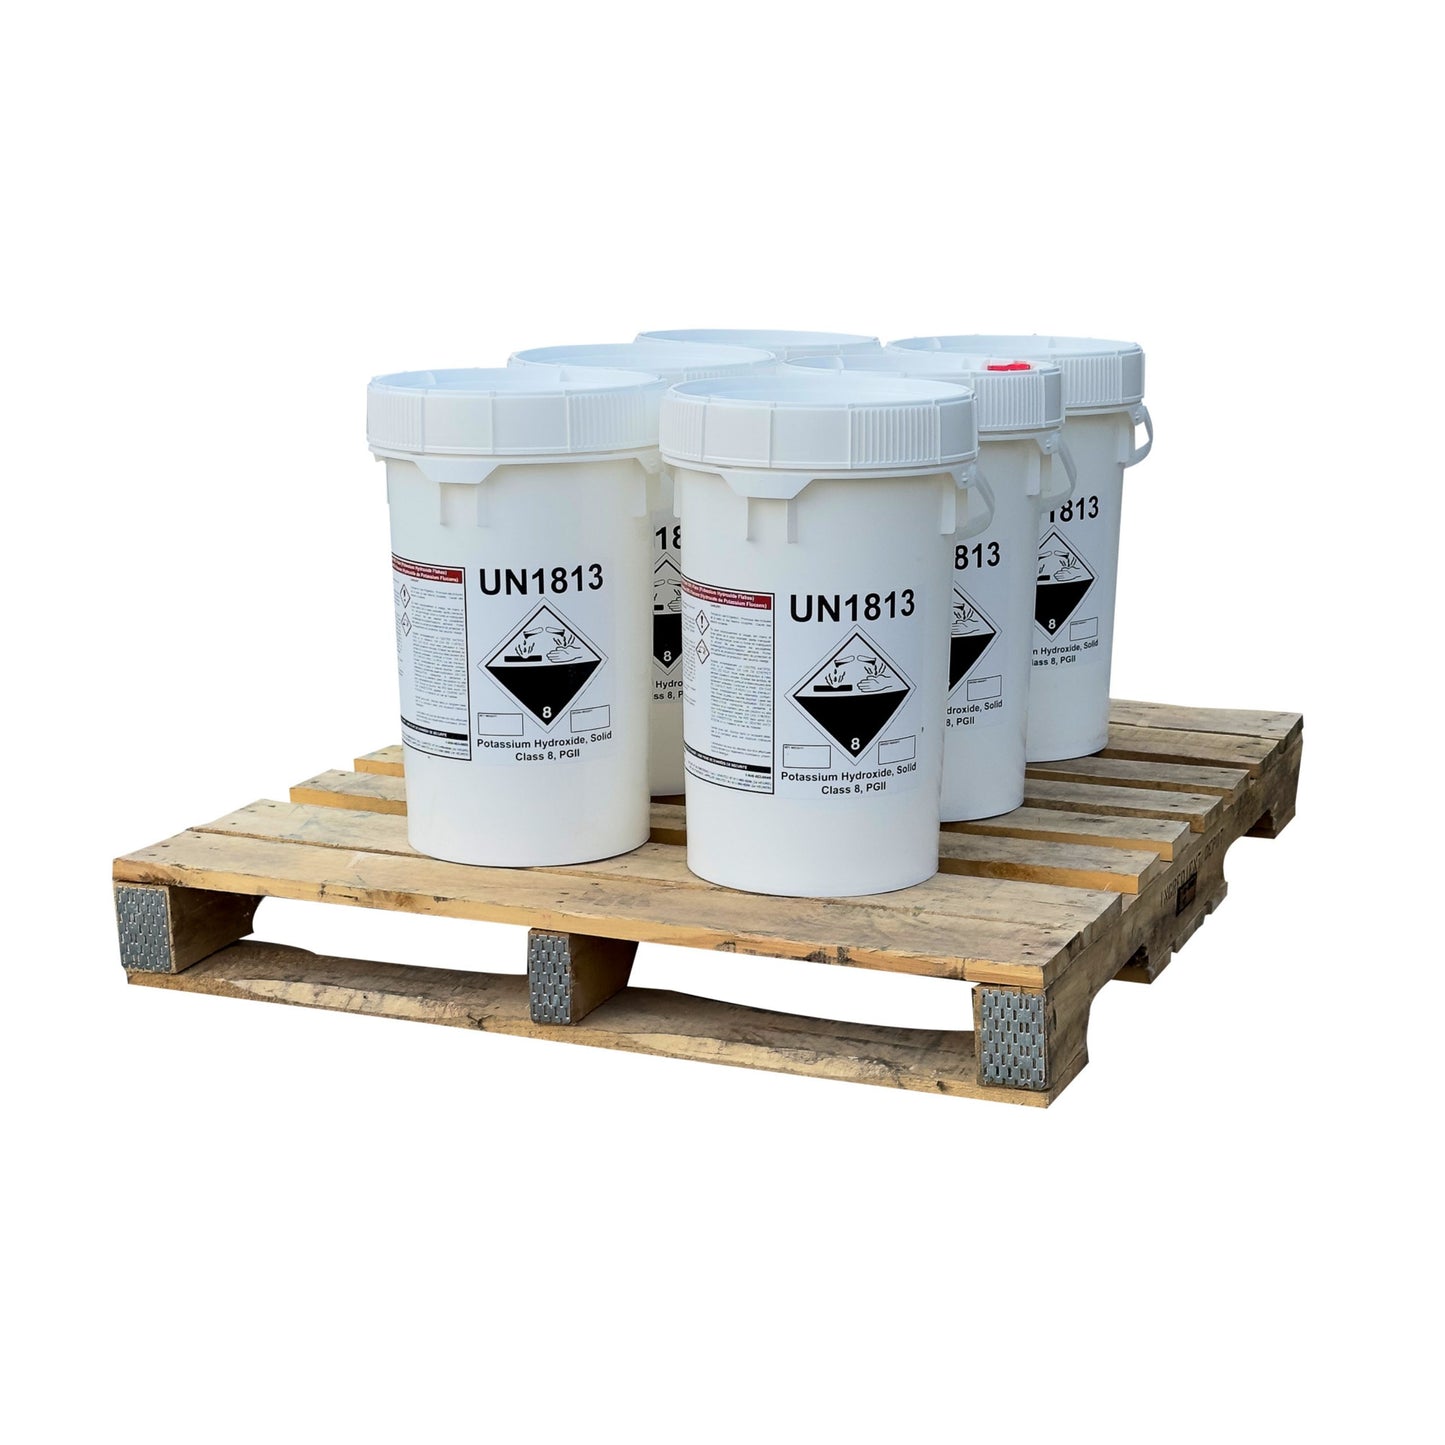 Potassium Hydroxide (Caustic Potash or KOH) Flakes - 22.68 kgs Pail(s) on a Pallet - IngredientDepot.com